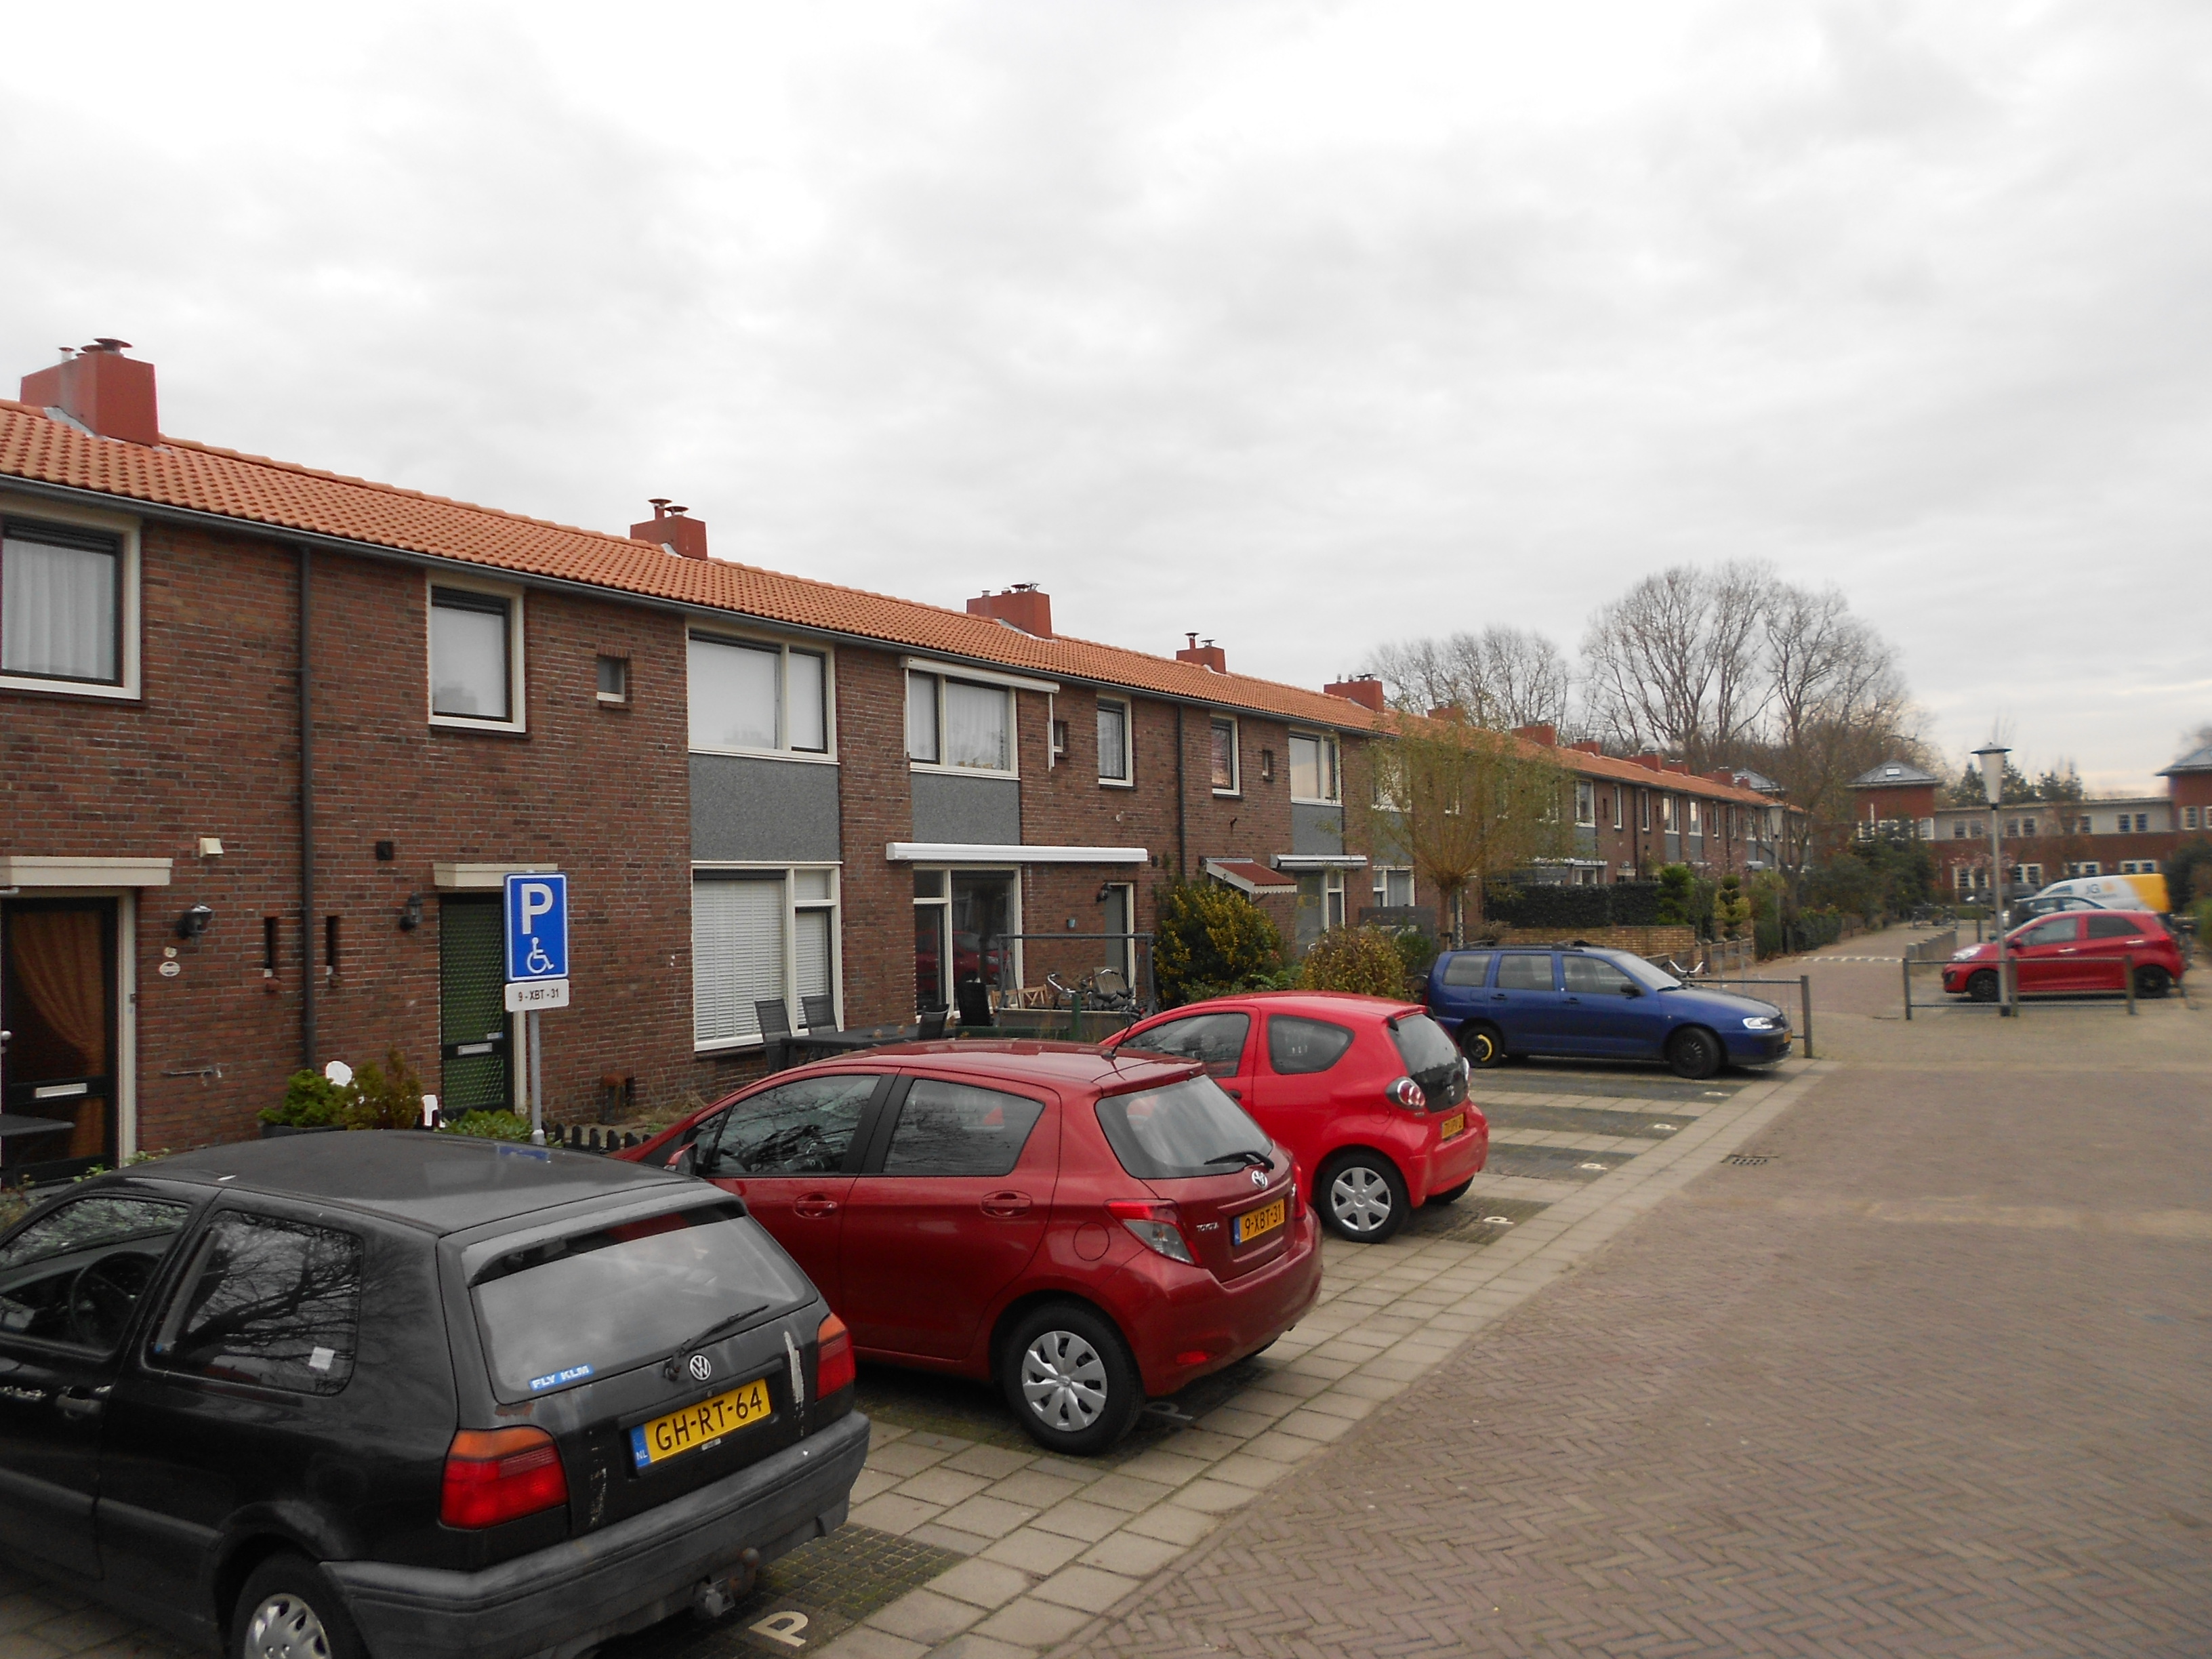 Kersappelstraat 1, 2201 NL Noordwijk, Nederland